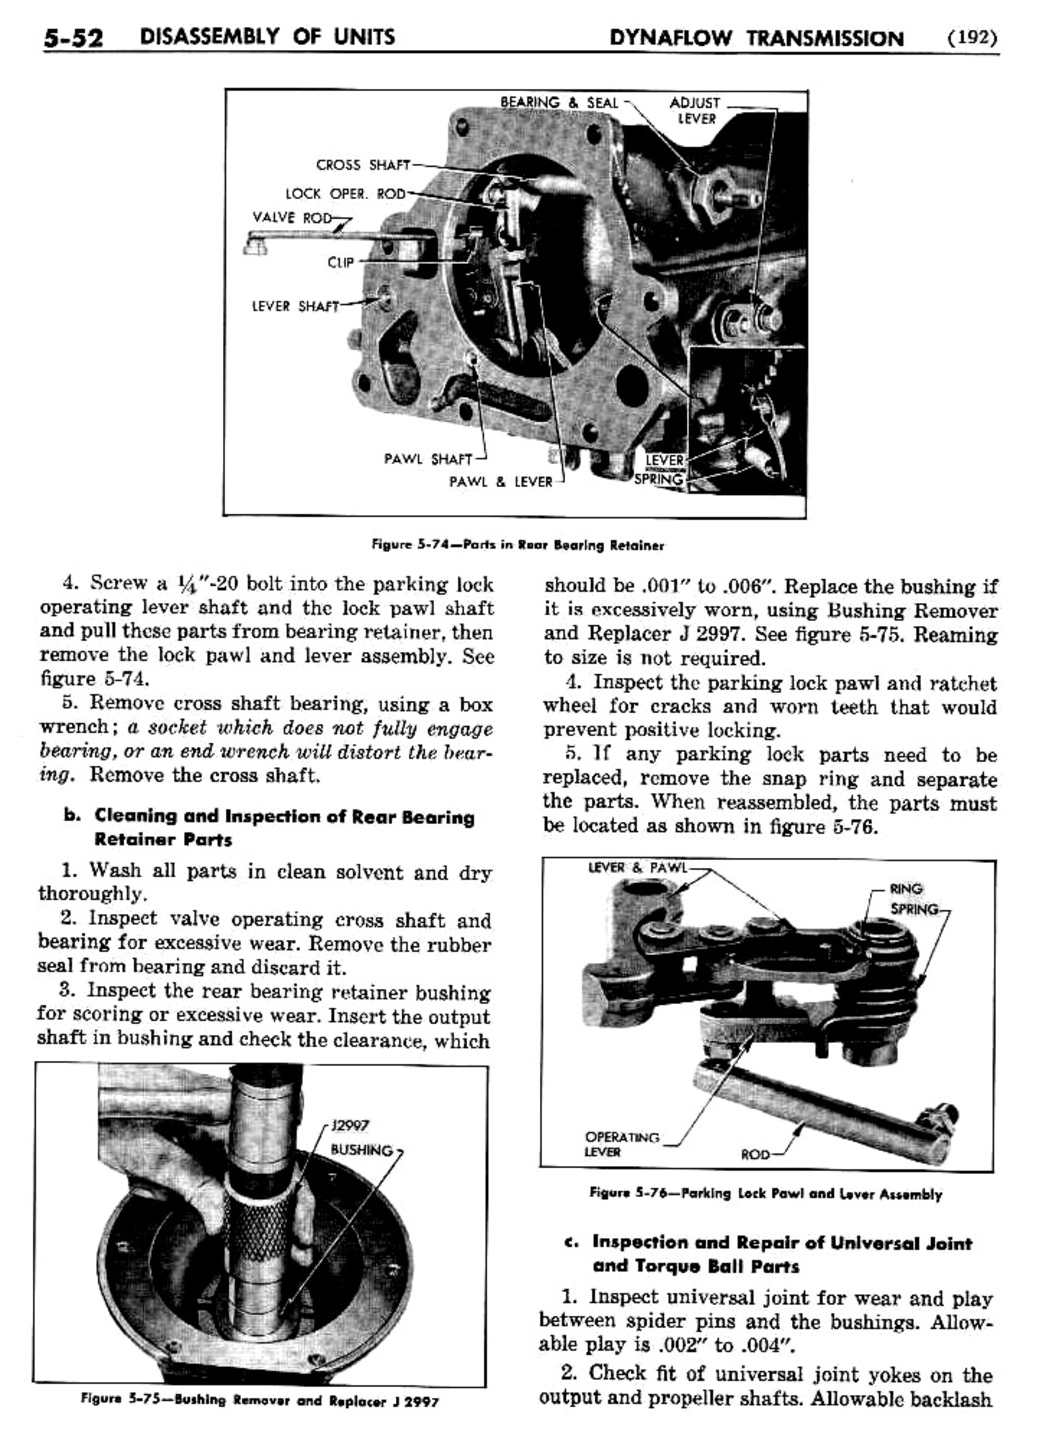 n_06 1955 Buick Shop Manual - Dynaflow-052-052.jpg